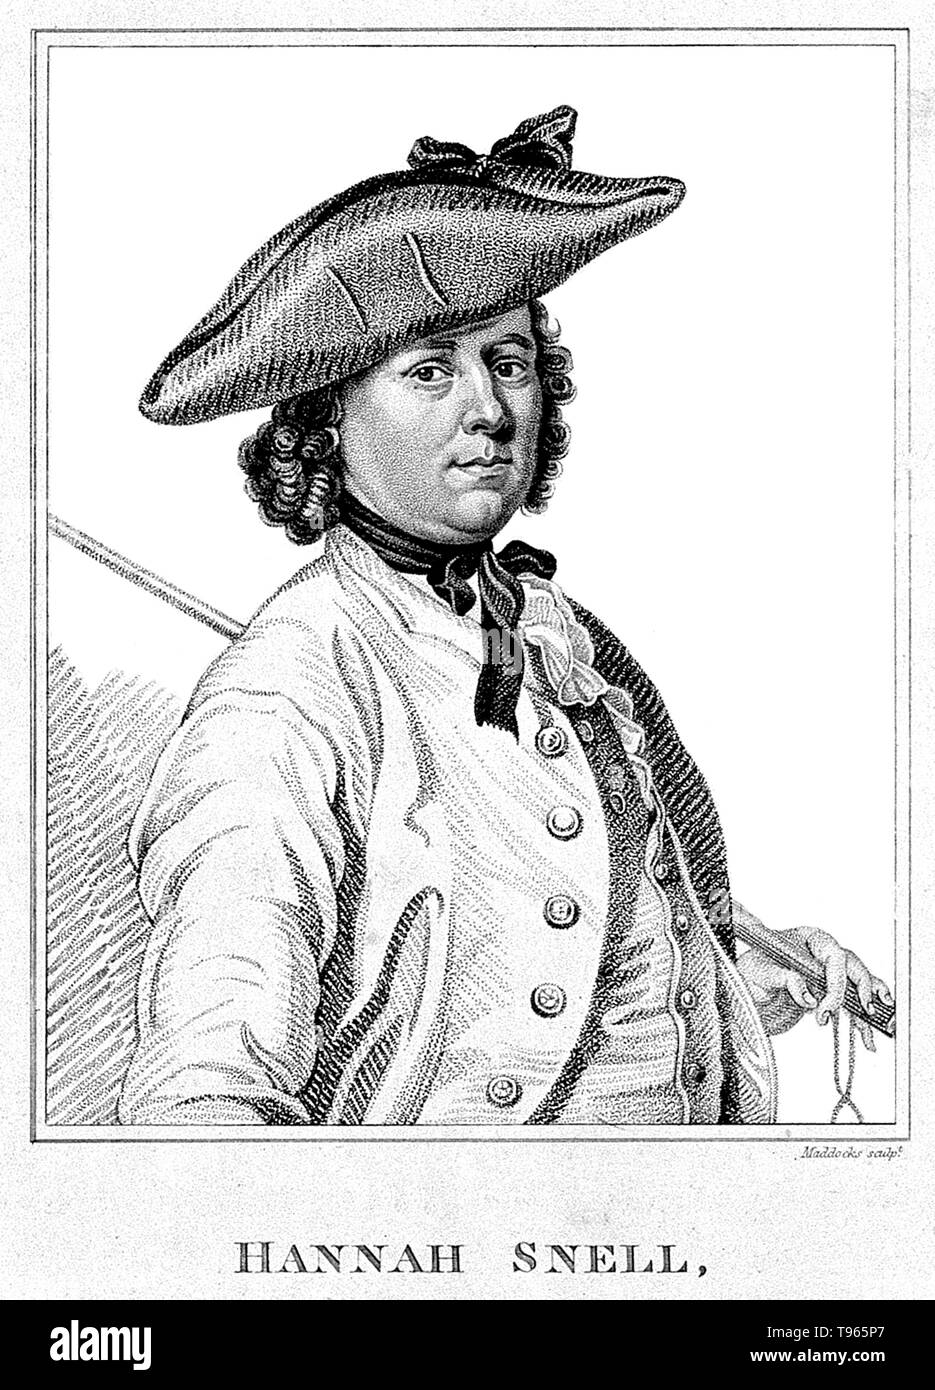 Hannah Snell (April 23, 1723 - Februar 8, 1792) war ein englischer Soldat. 1744 Hannah heiratete einen Mann namens James Beträge. Das Paar hatte eine Tochter, sondern das Kind gestorben und ihr Mann verschwunden. Sie borgte Kleidung von ihrem Schwager, James Gray, seine Identität angenommen und trat der Marines. Im Jahre 1748, ihr Gerät gesendet wurde die französische Kolonie von Schlacht von Pondicherry in Indien zu erfassen. Sie kämpfte auch in der Schlacht bei Devicottail im Jahr 1749. Stockfoto